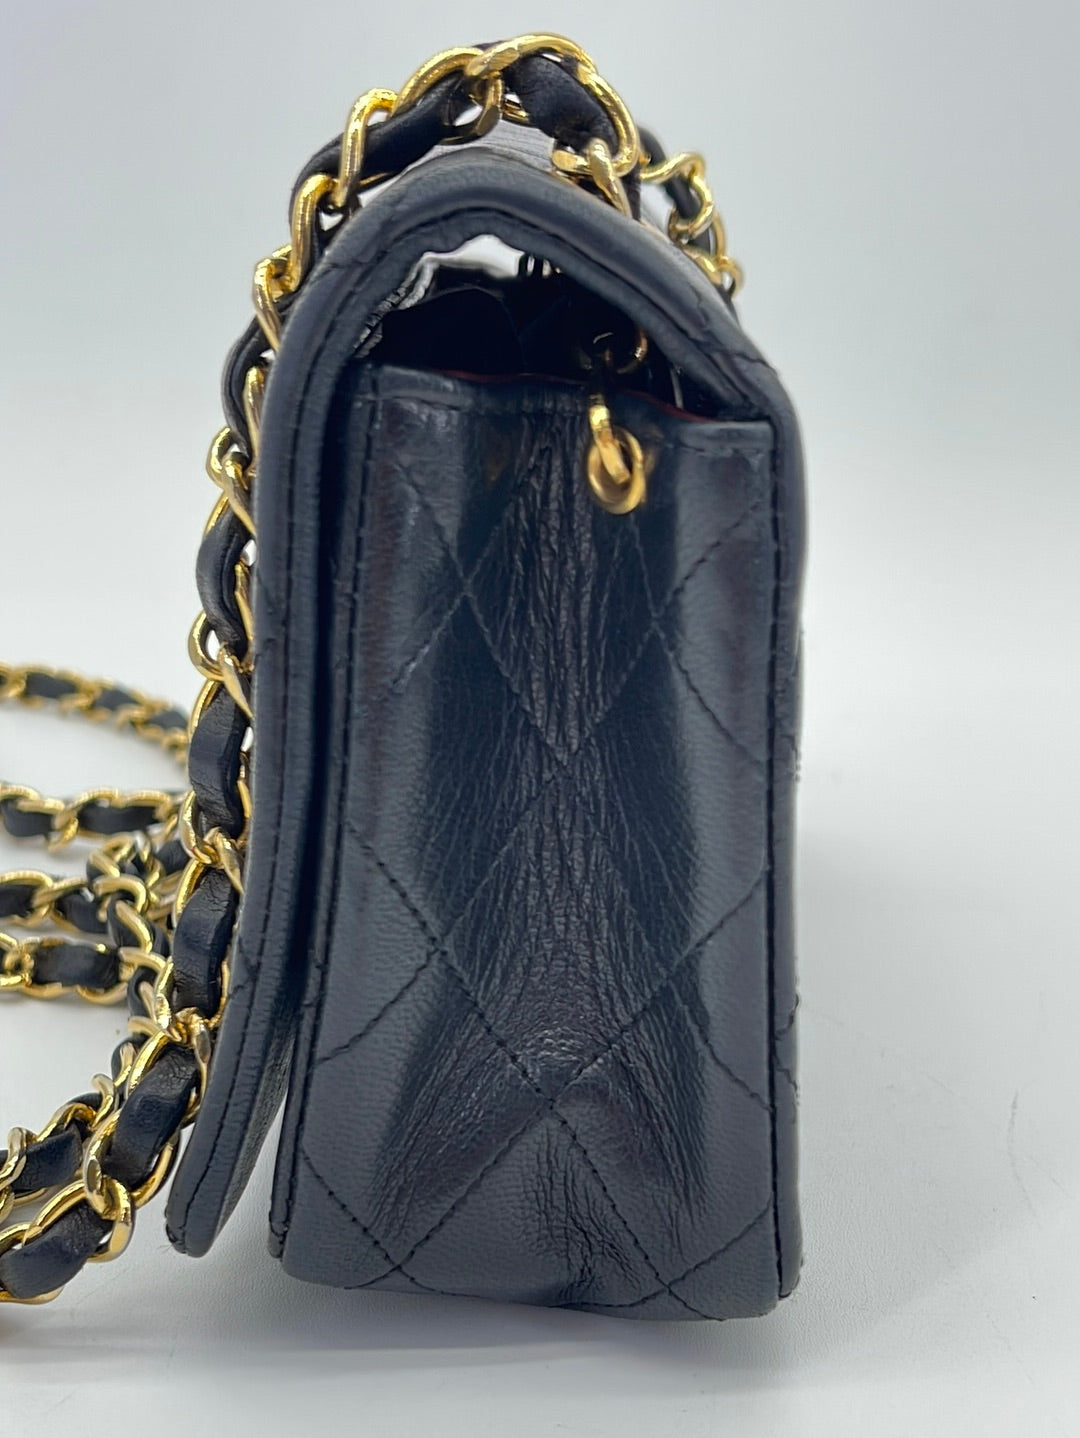 Preloved Chanel Black Quilted Lambskin Full Single Flap Shoulder Bag 1824880 110223